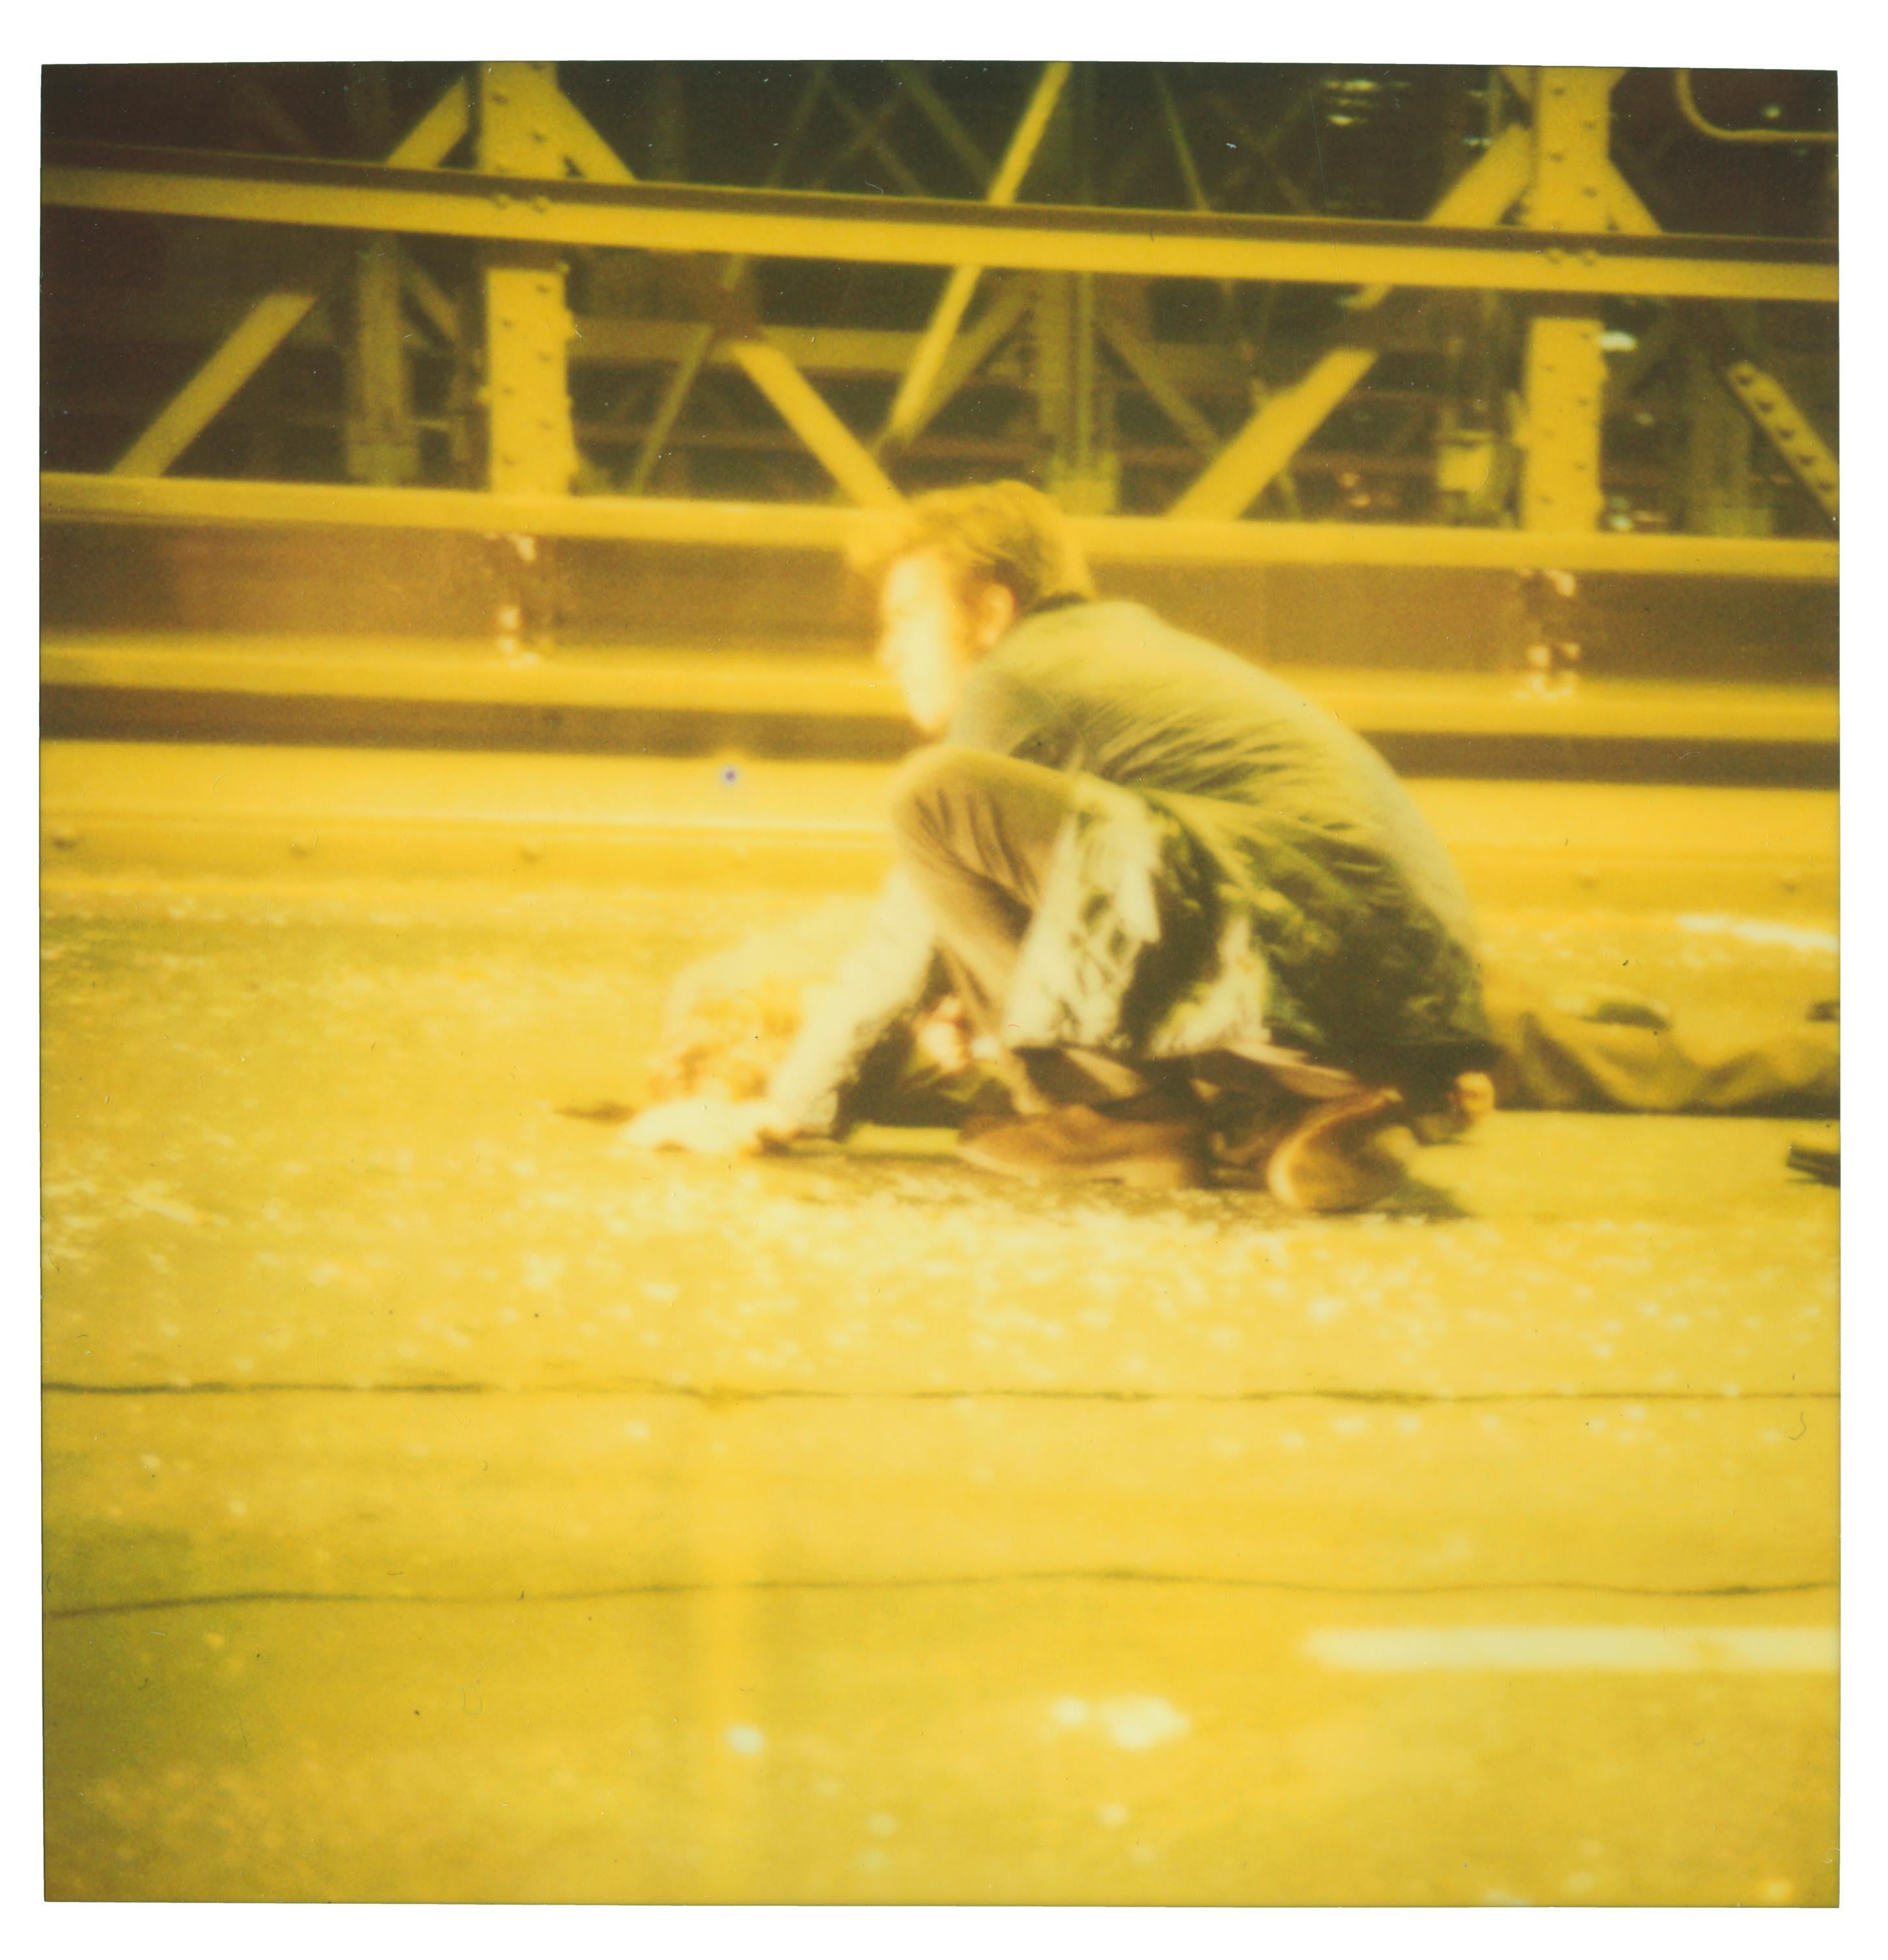 Stefanie Schneider Figurative Photograph - Accident II - (Stay), analog, 128x125cm, featuring Ewan McGregor